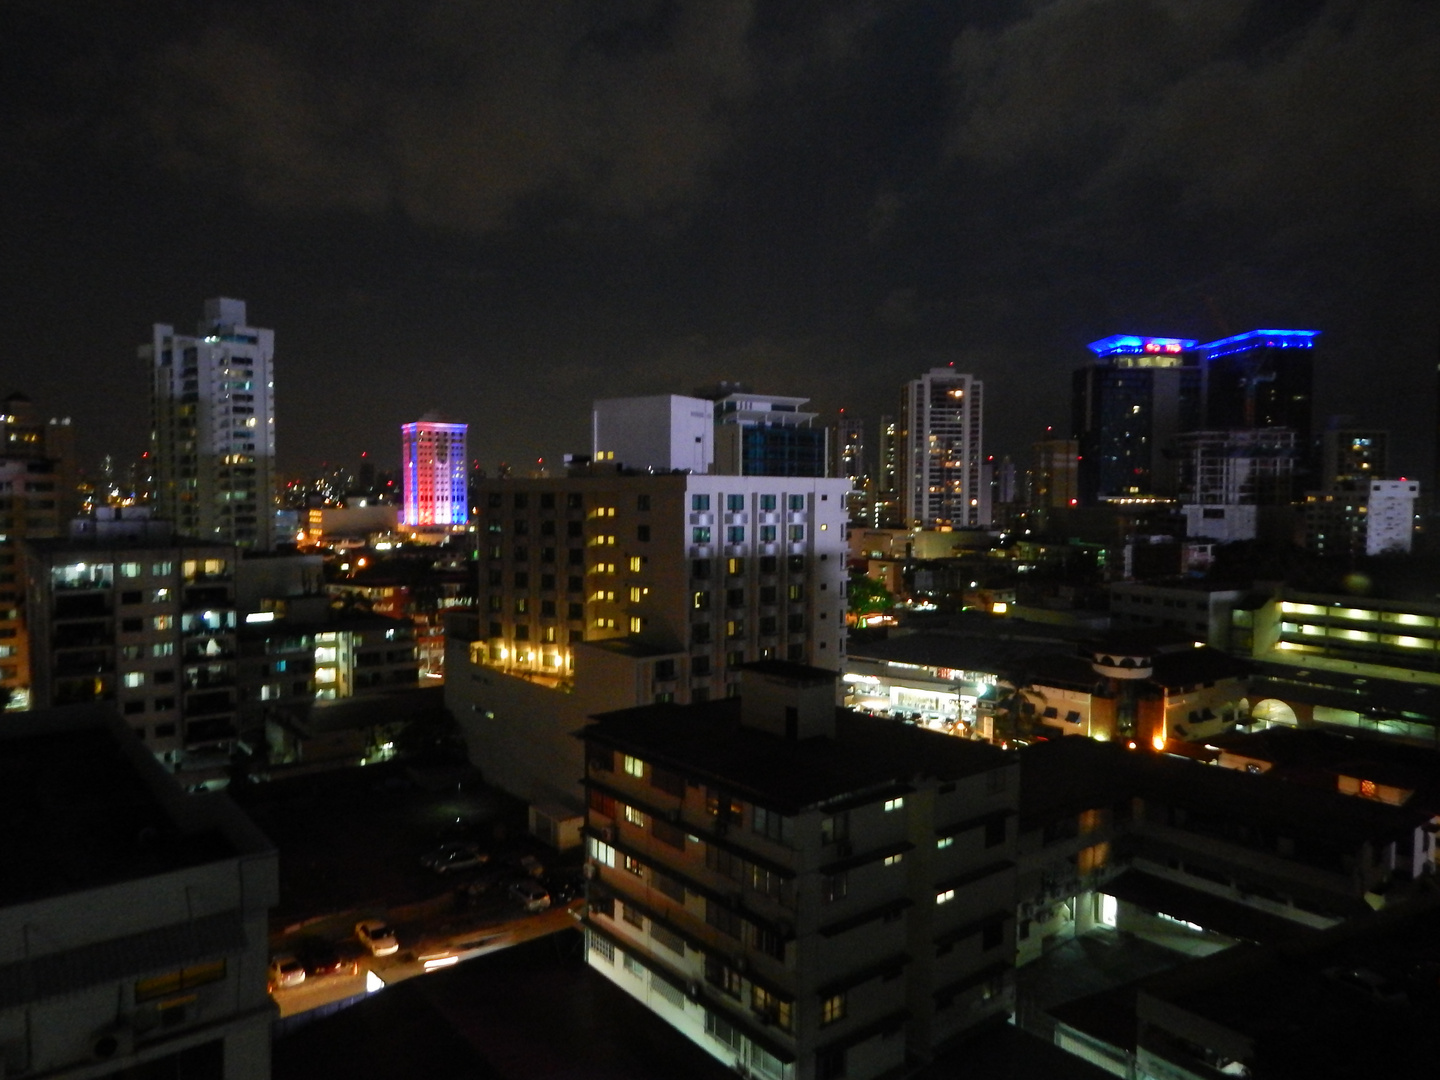 Panama at night